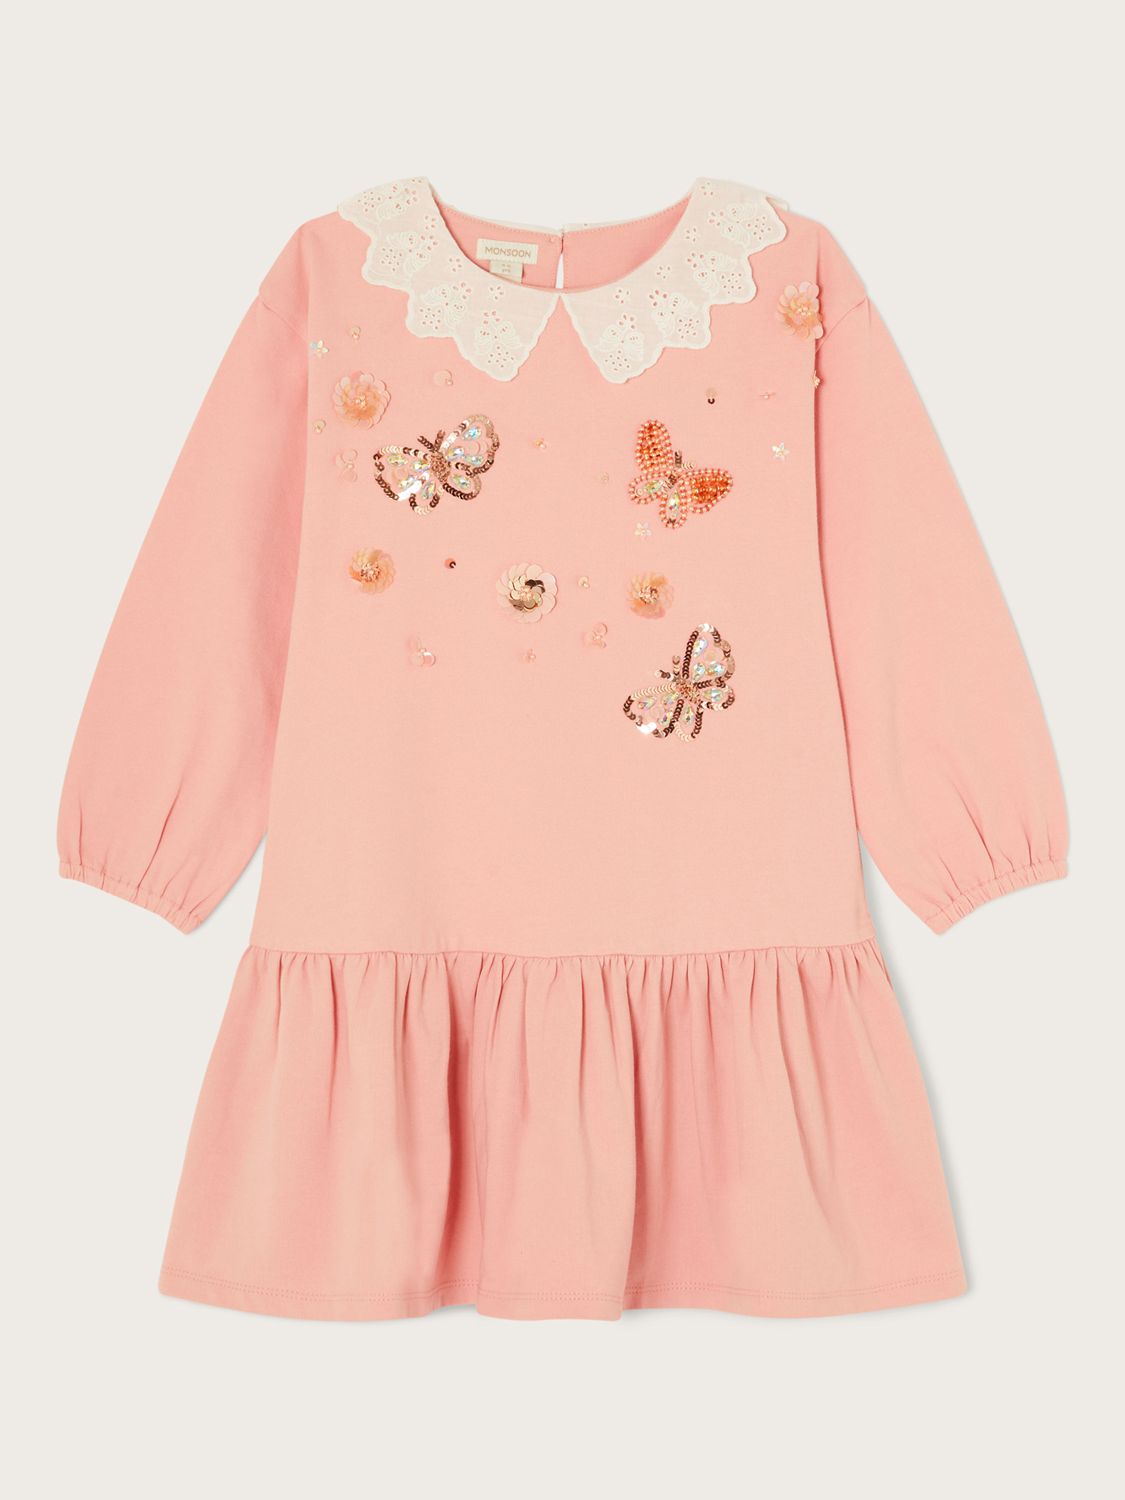 Monsoon Kids' Butterfly Collar Cotton Jersey Dress, Pink